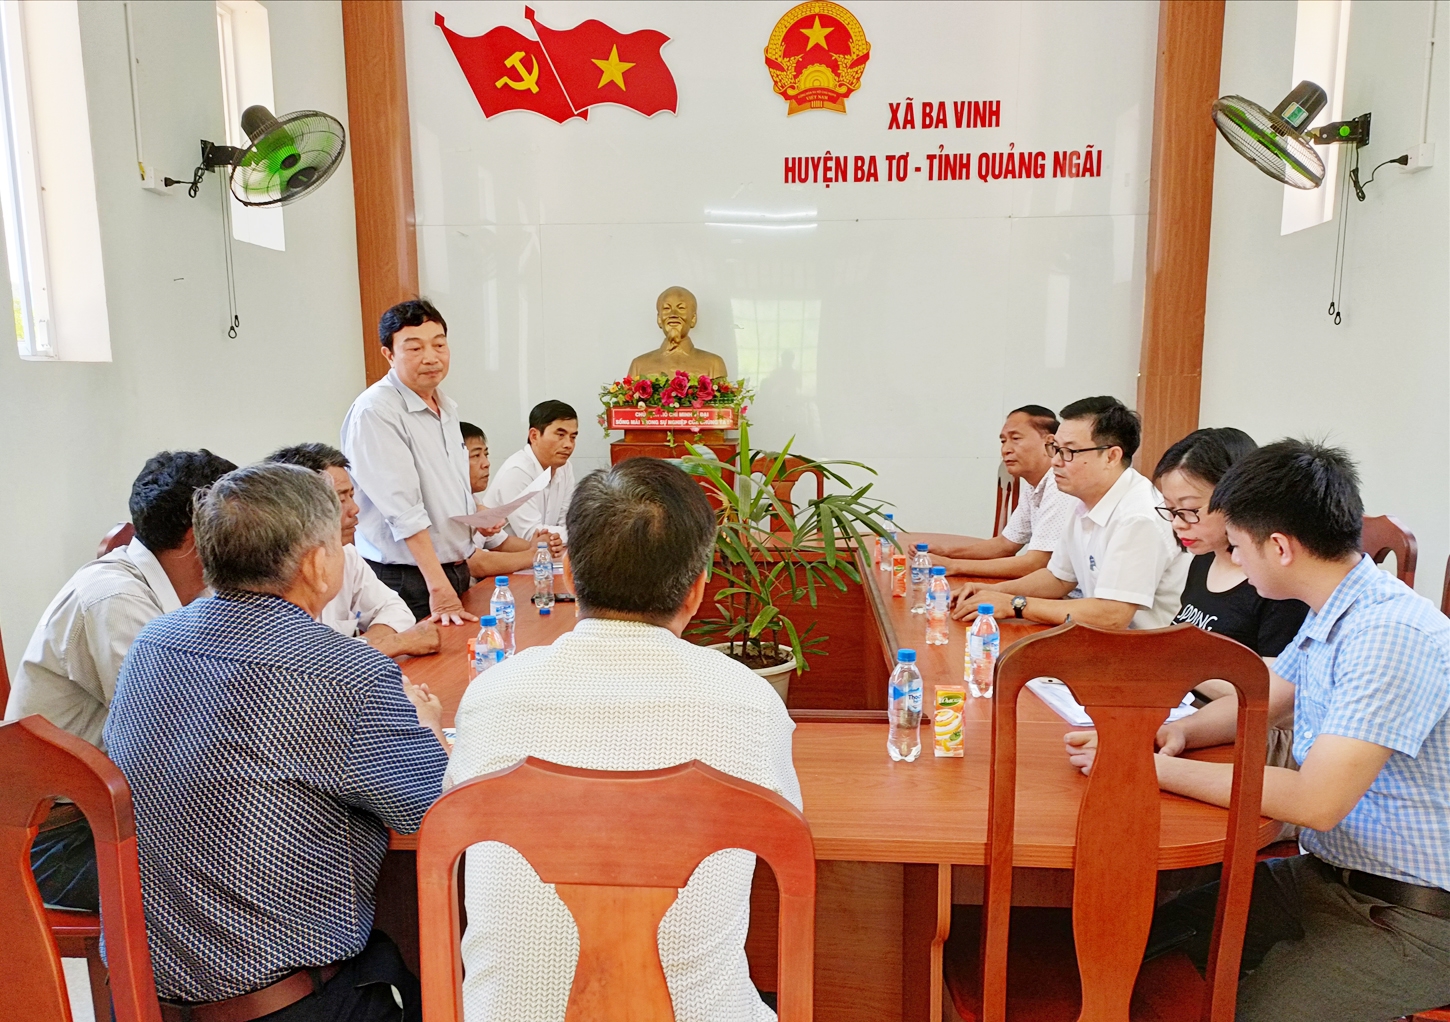 Đoàn công tác trao đổi thông tin với những Người có uy tín tại xã Ba Vinh, huyện Ba Tơ